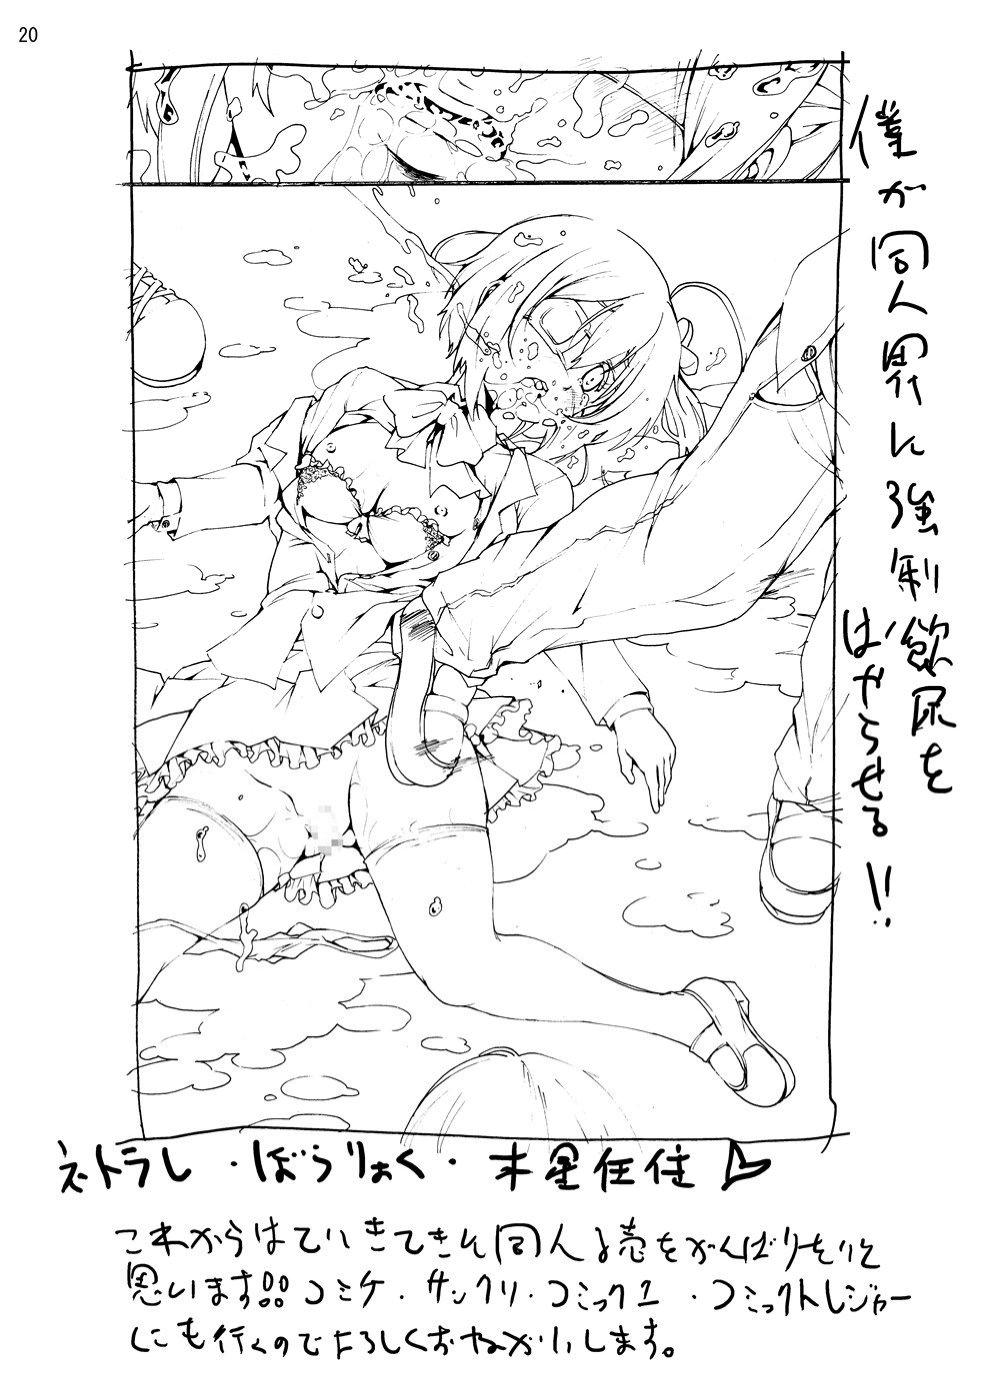 Teen Sex Takanashi Rikka o Nakisakebu made Rape Shitai! - Chuunibyou demo koi ga shitai Harcore - Page 19